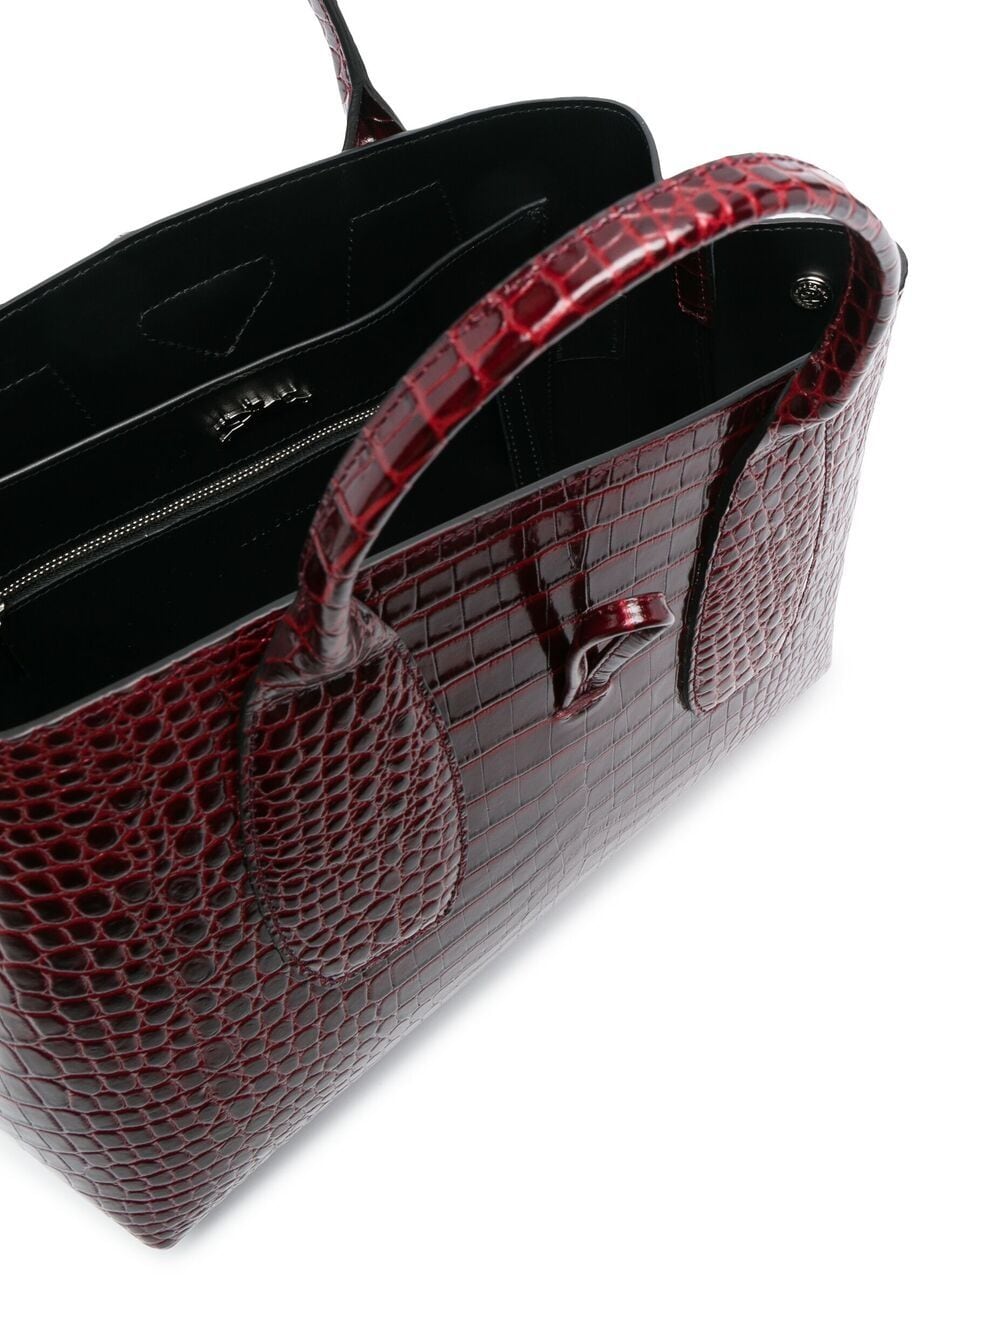 фото Longchamp сумка-тоут roseau с тиснением под кожу крокодила